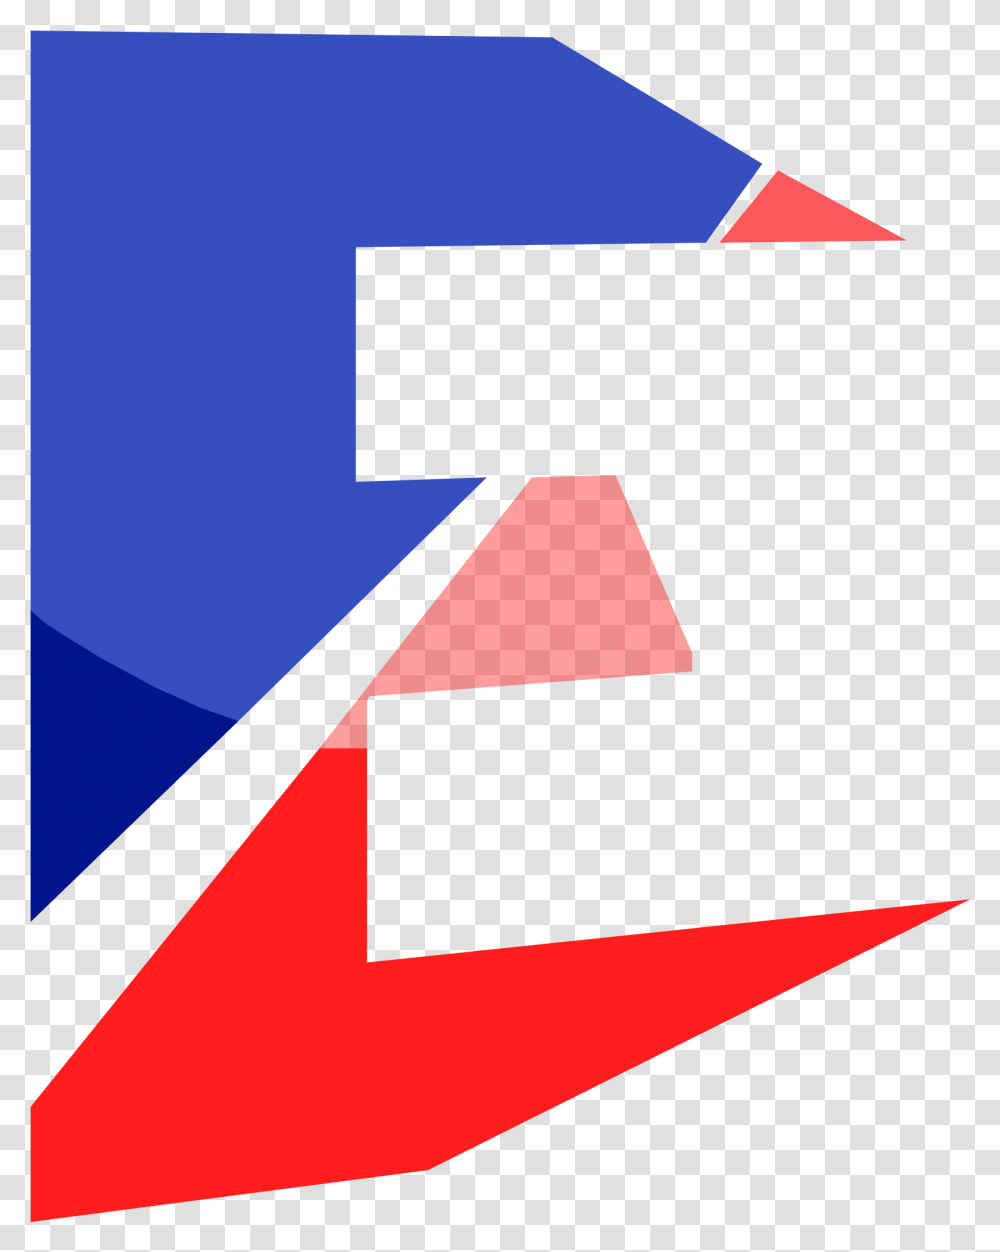 Team S Logo Graphic Design, Trademark, Number Transparent Png